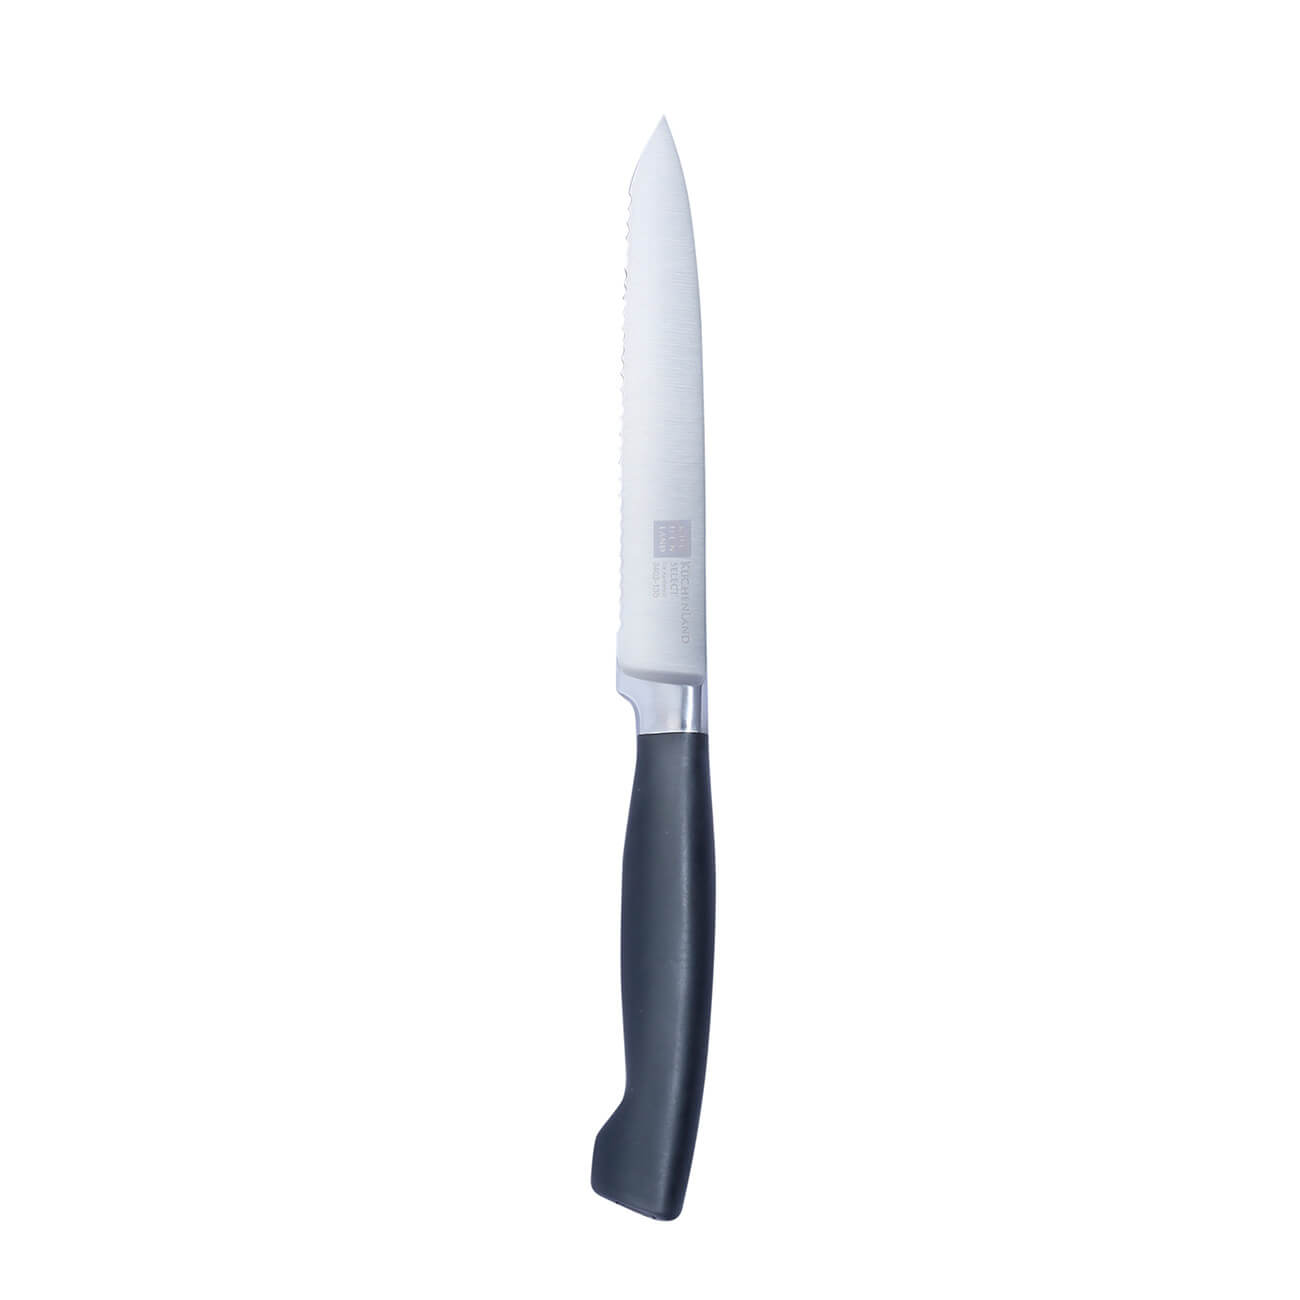 Kuchenland Нож универсальный, 13 см, сталь/пластик, Select инструменты для моделирования и придания формы набор 4 шт пластик 16 см